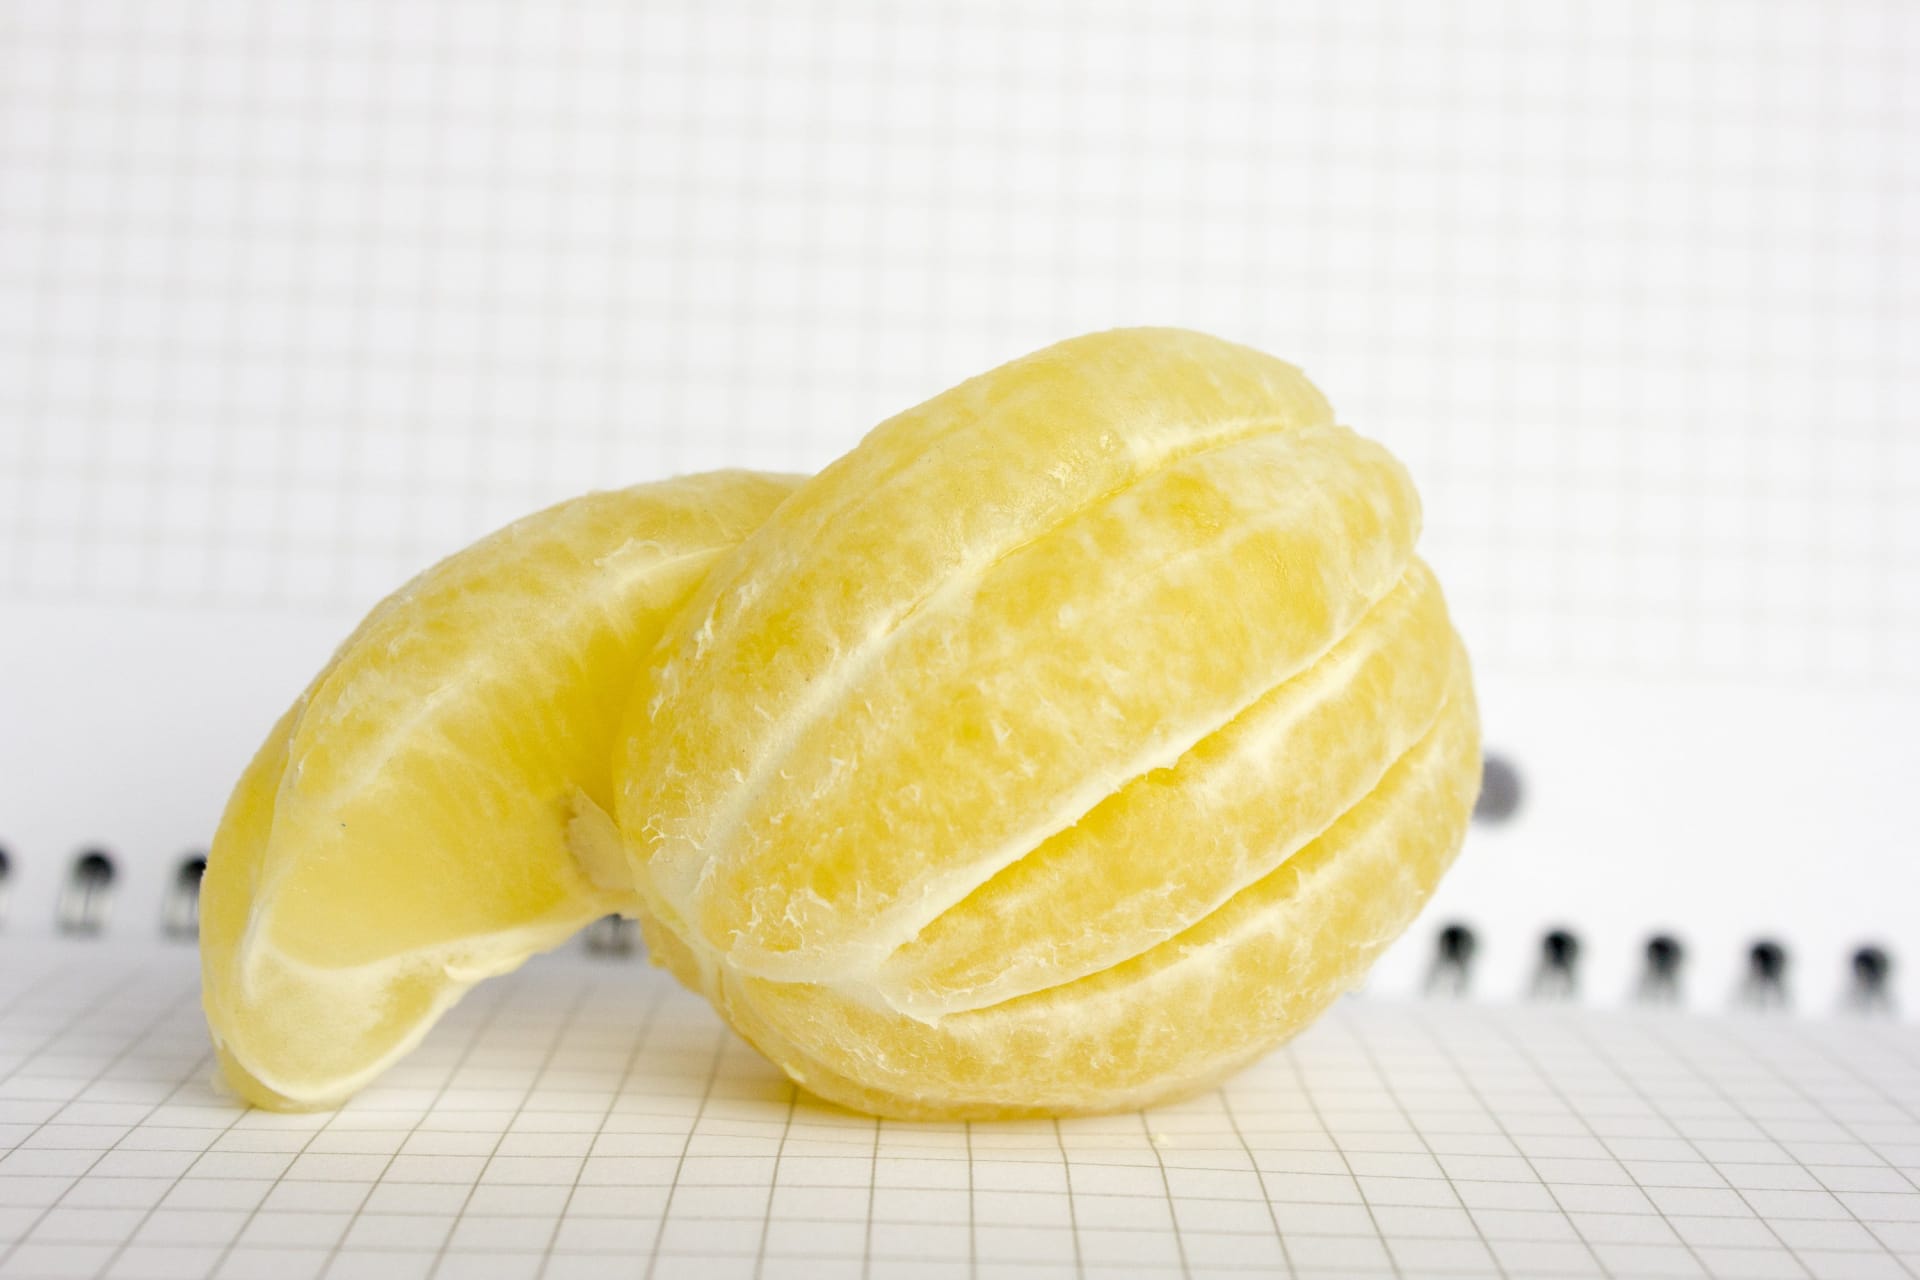 Úplně normální oloupaný citron... počkat, tohle přece nikdo nedělá!